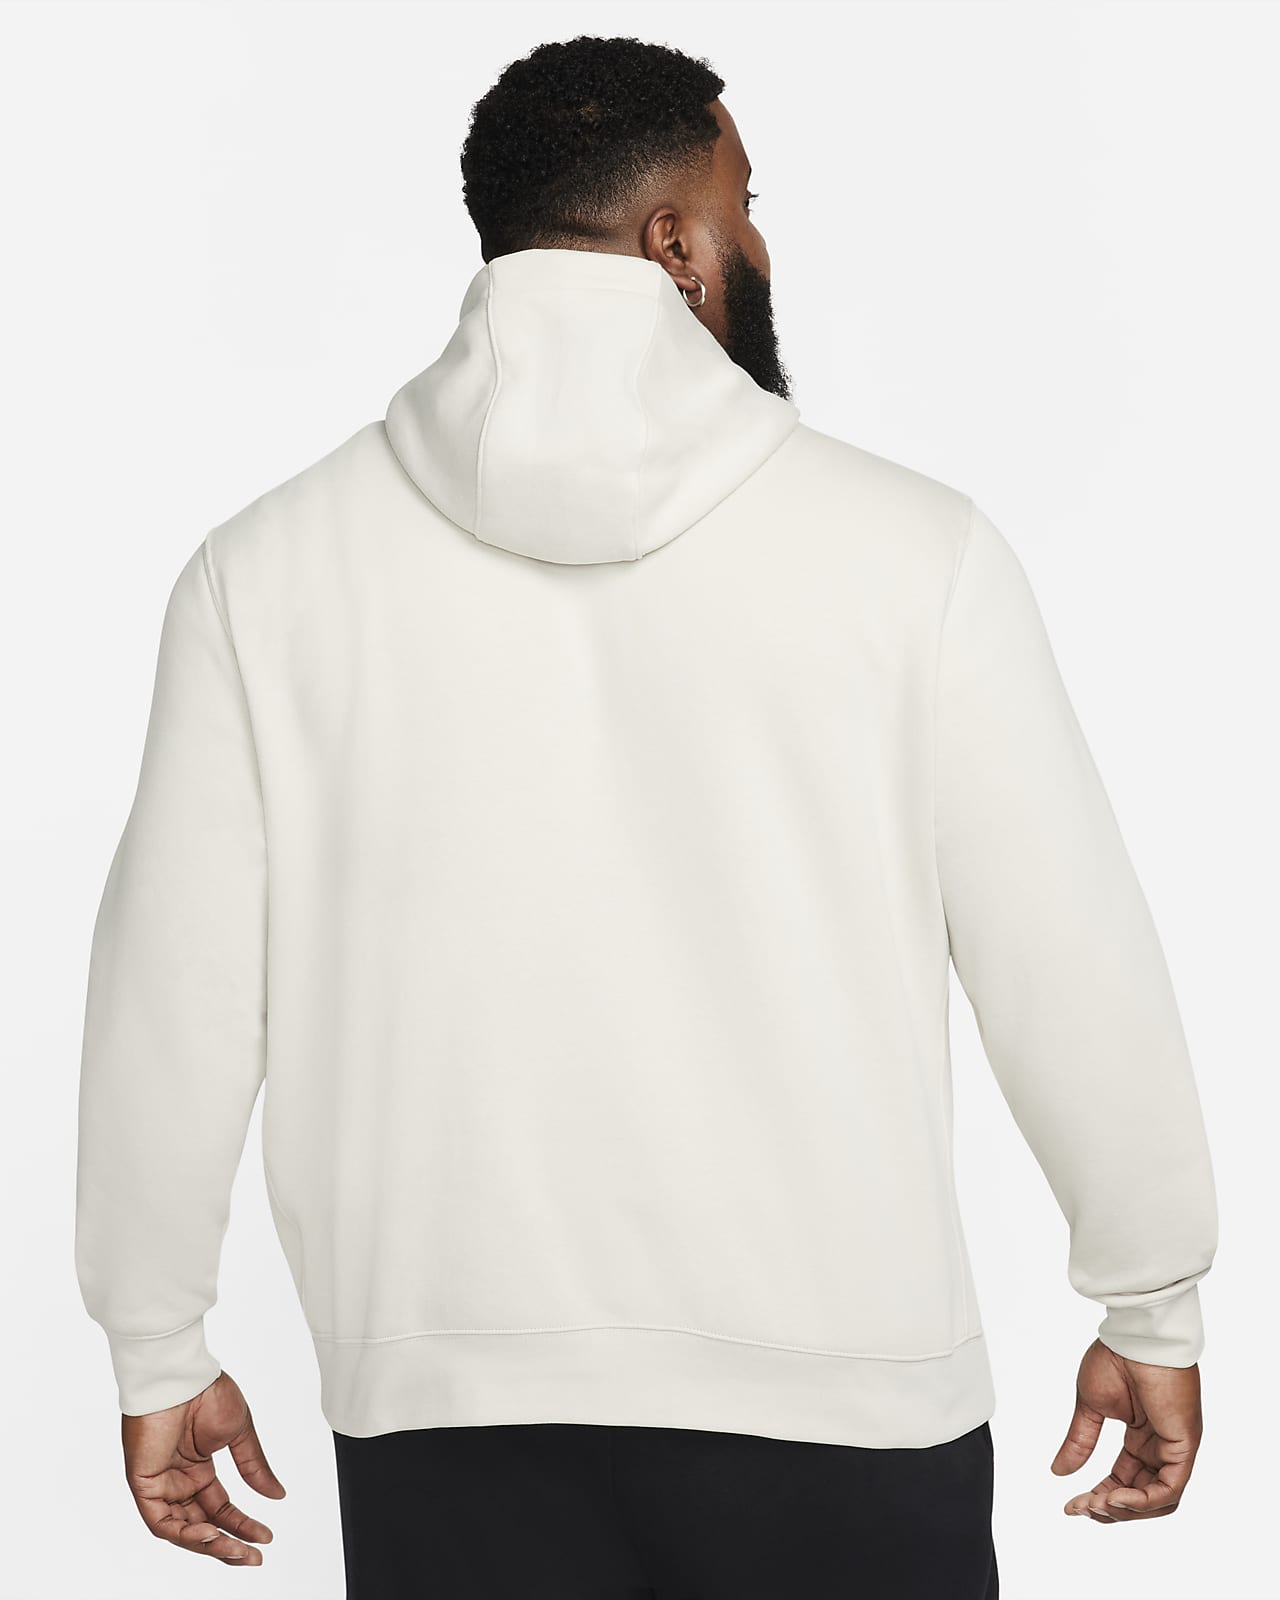 Nike Sportswear Club Fleece Men's Sweatshirt, Red/White